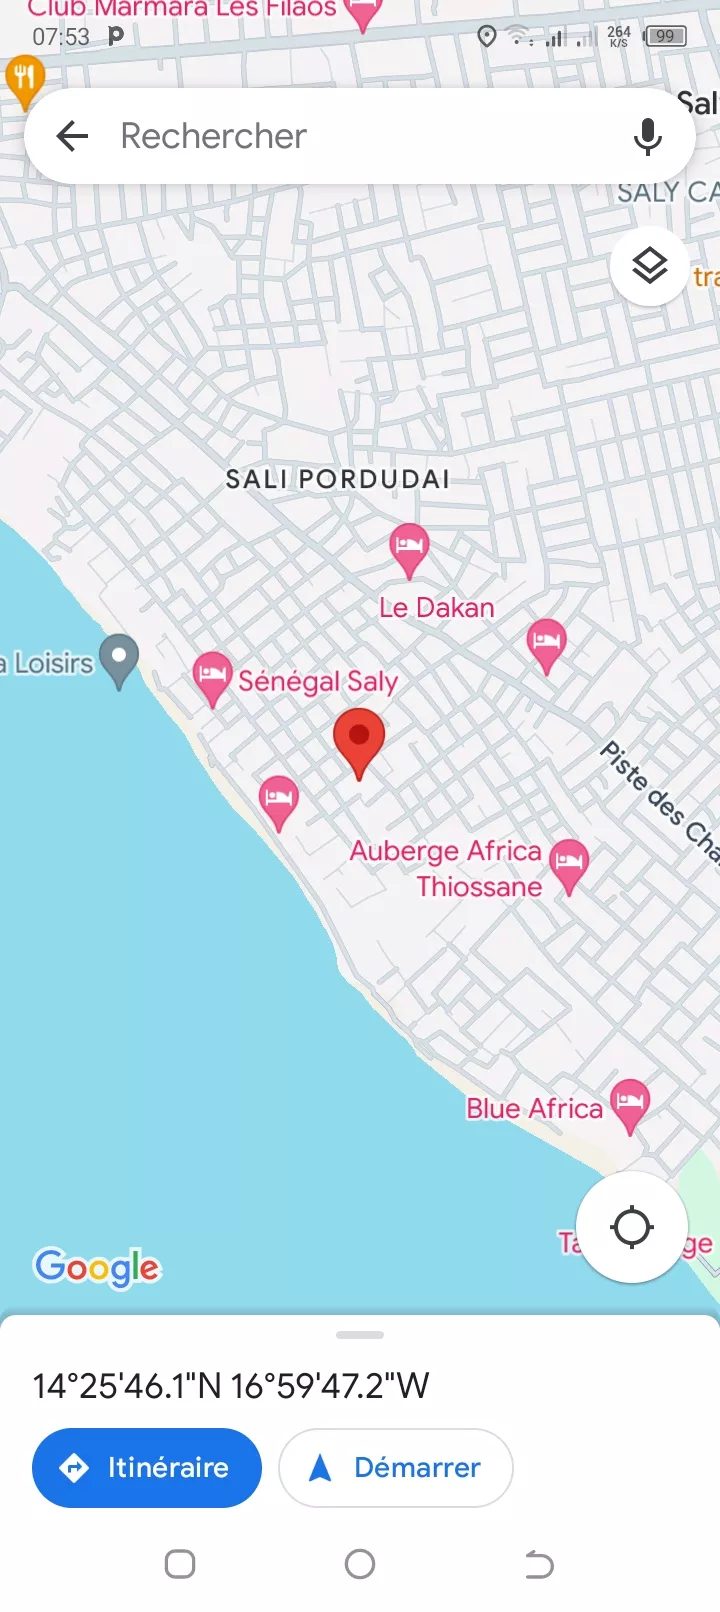 Terrain 450 mètres carrés à Saly à 35000000 - Petites annonces gratuites - Achat et vente à Mbour, Sénégal